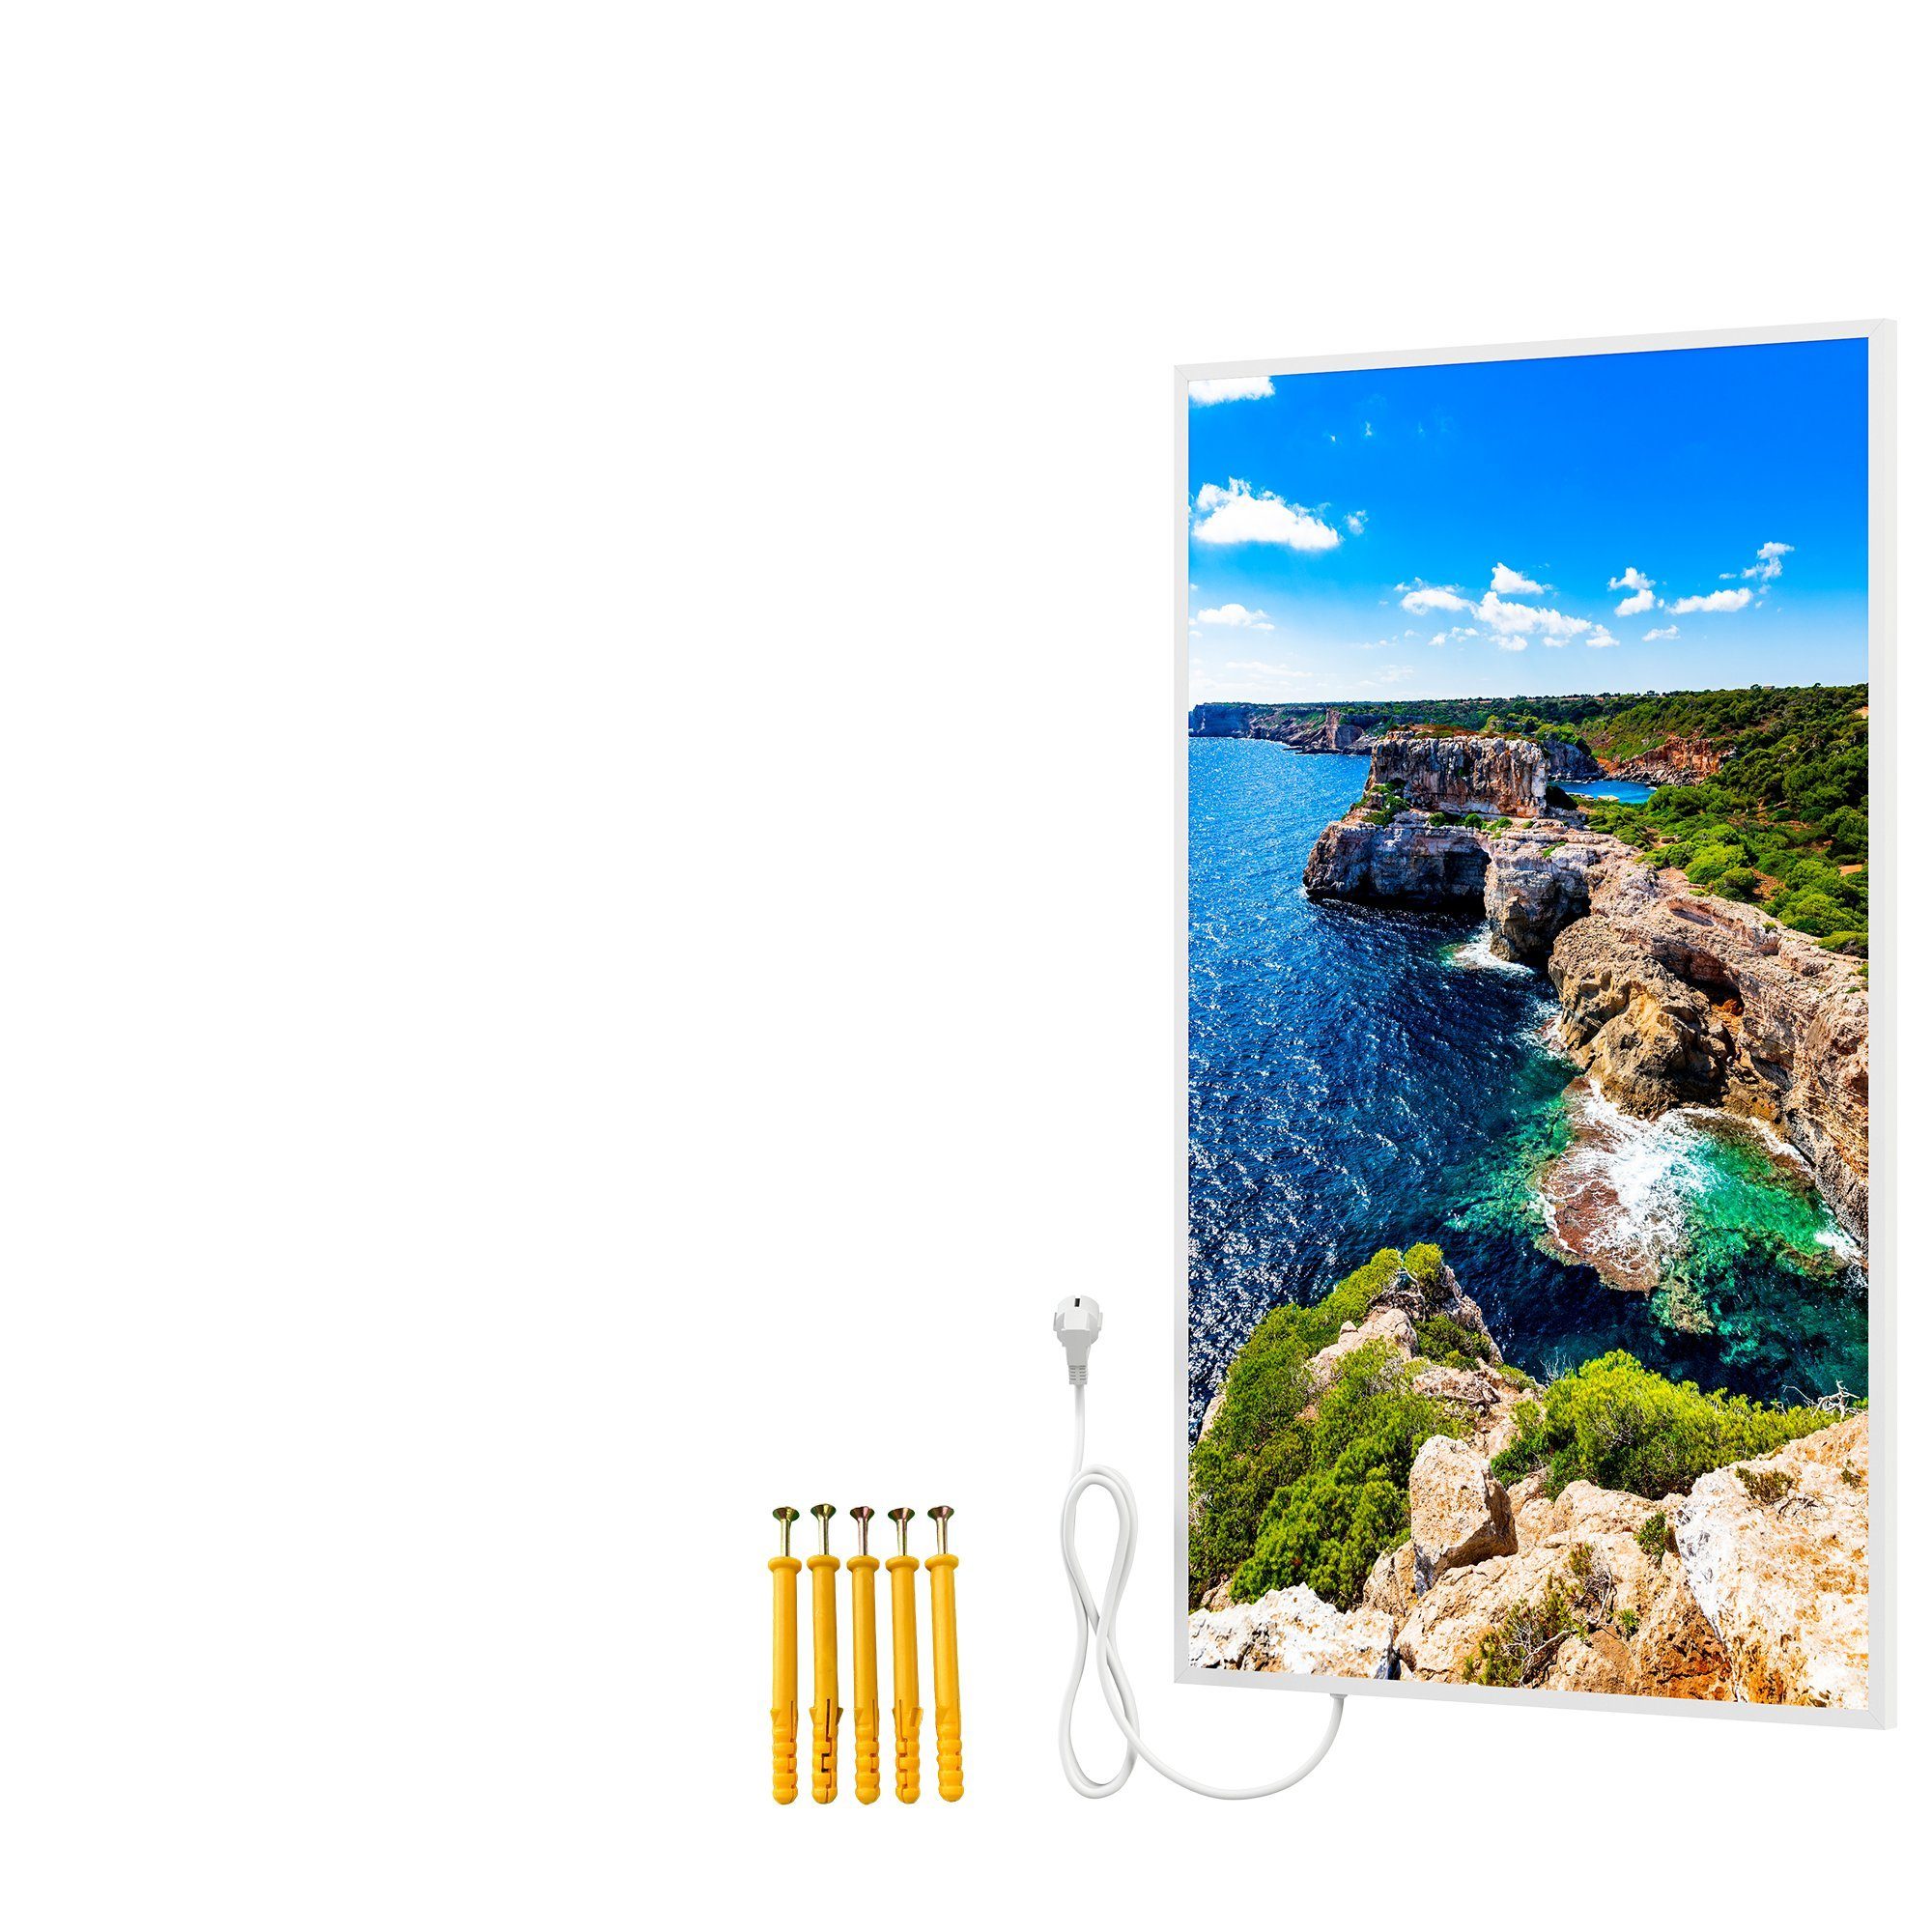 Bildheizung, Motiv: Mallorca Infrarotheizung Bild Inselküste, Rahmen, mit Infrarotheizung Bringer